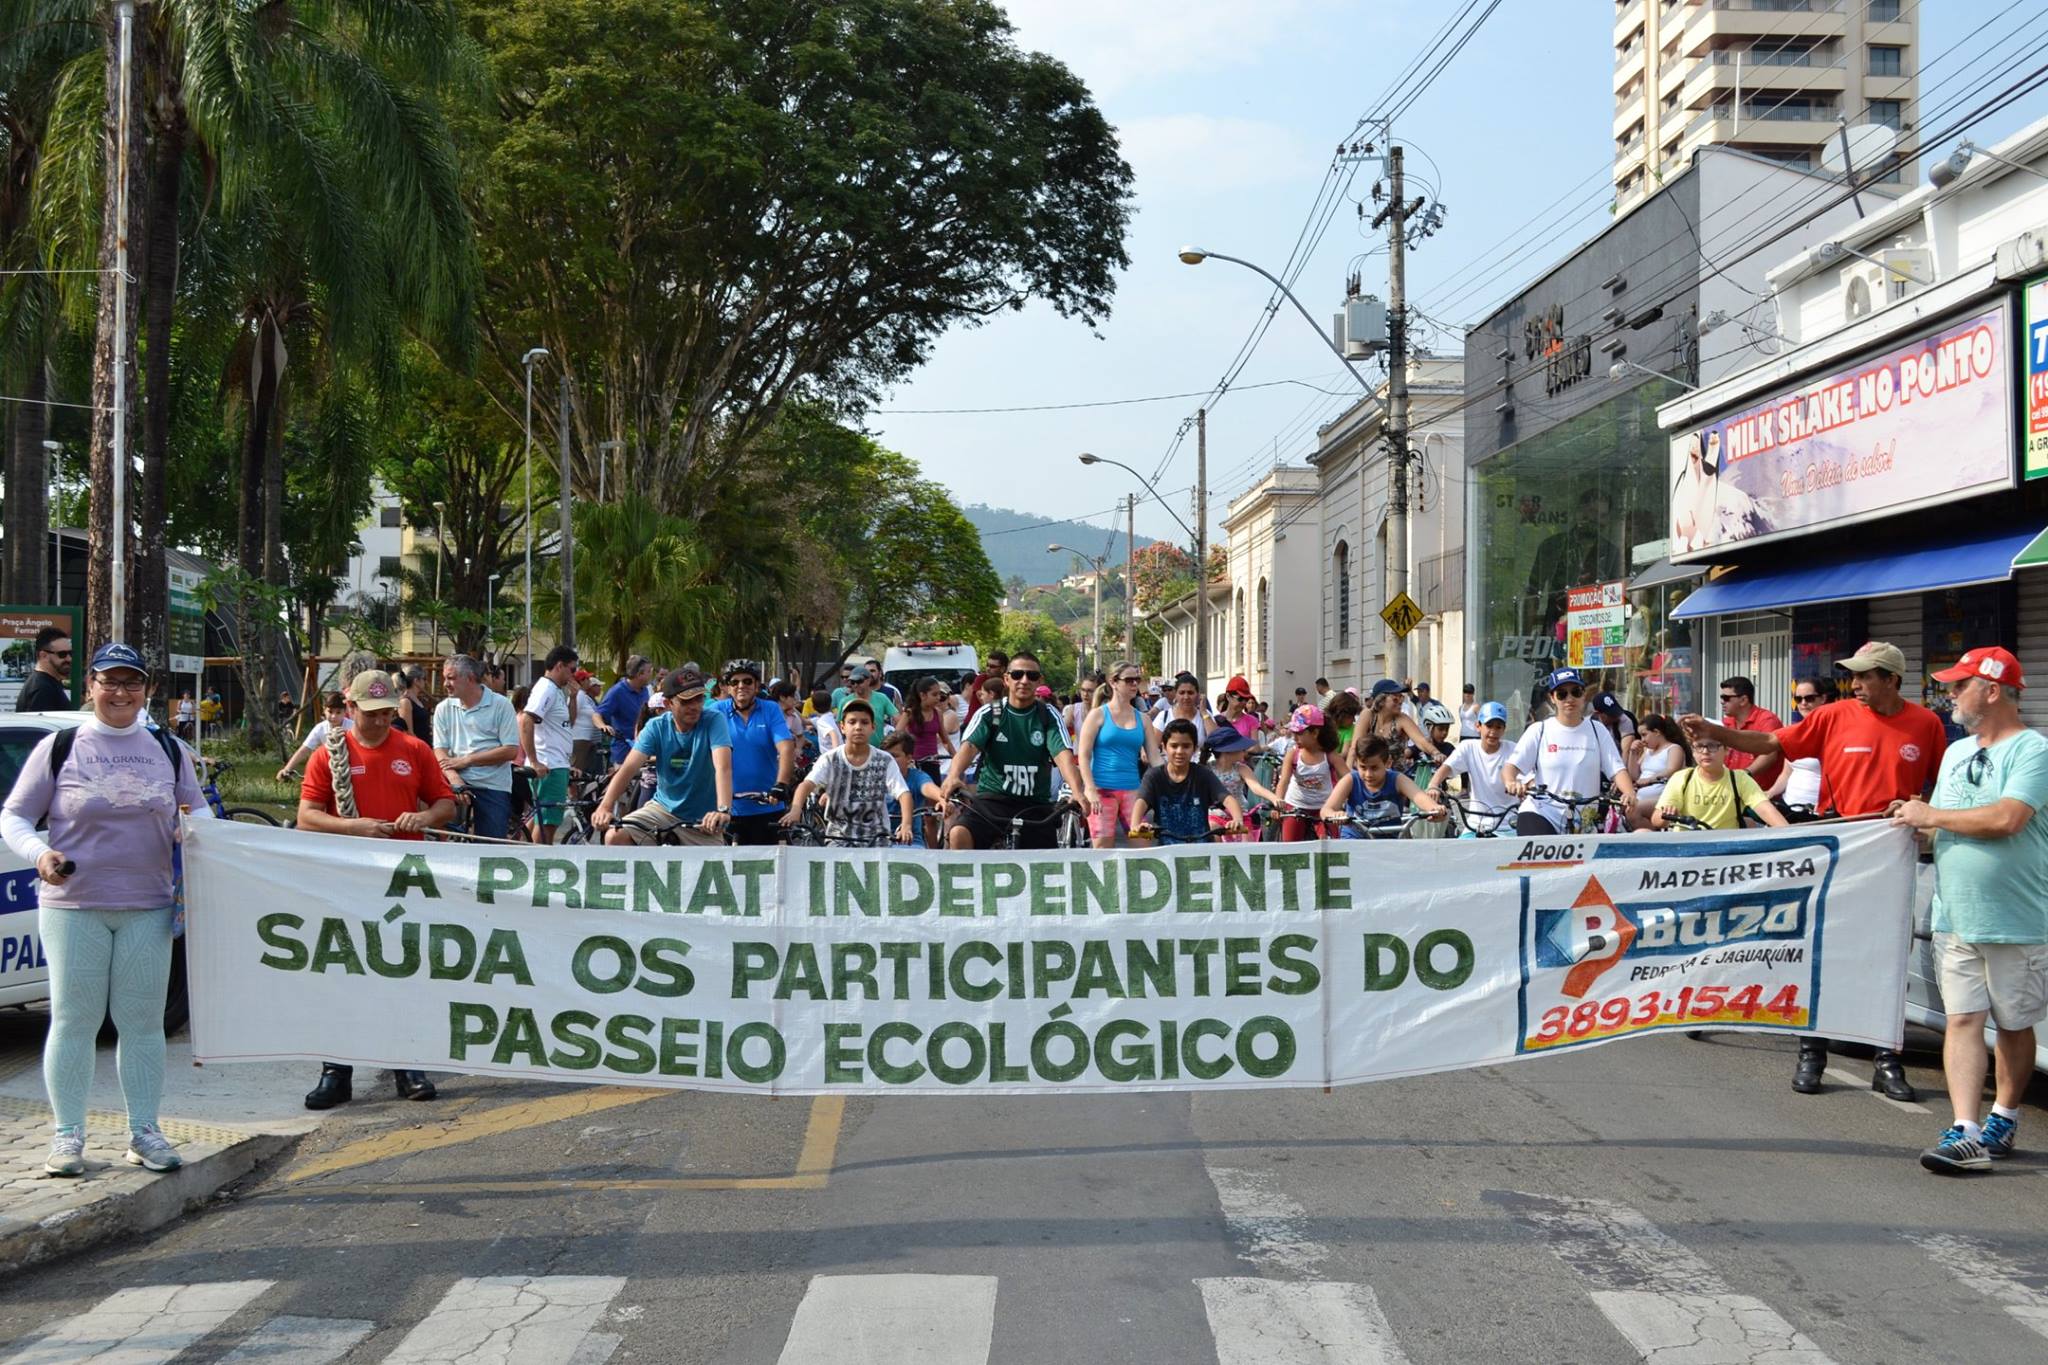 Passeio Ecológico, Ciclístico e Pedestre da PRENAT Independente será realizado no dia 25 de setembro